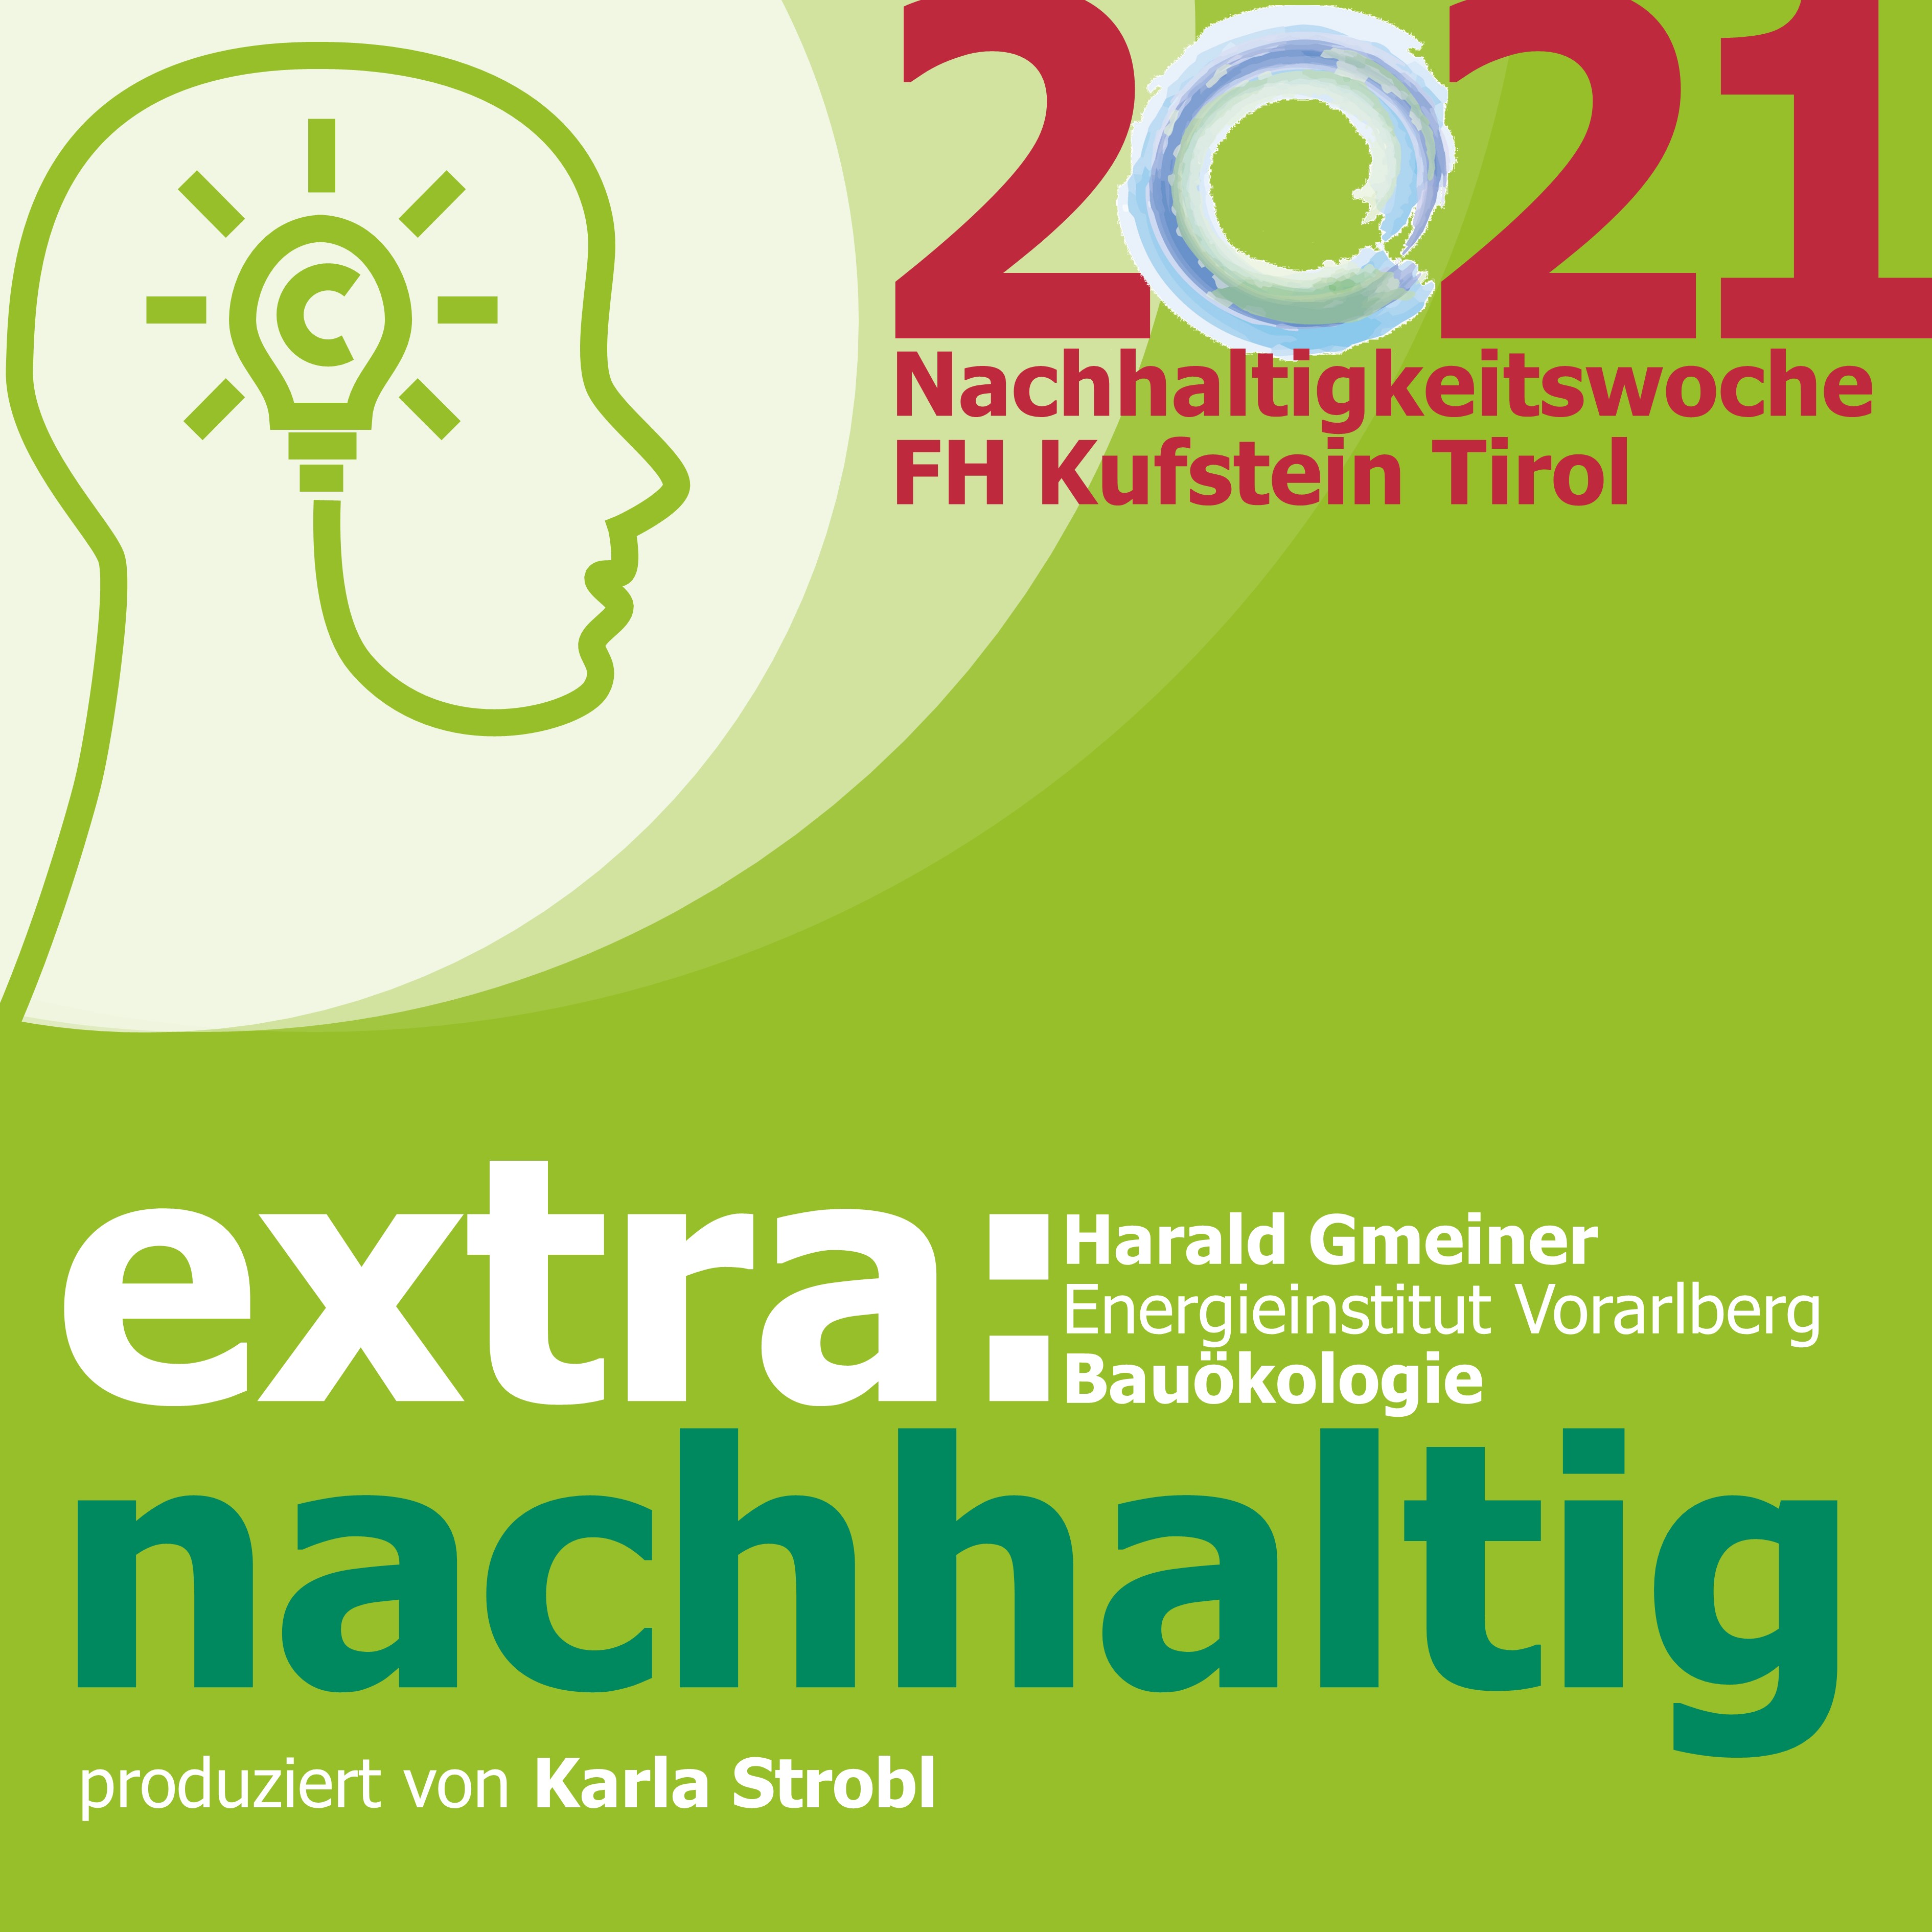 Episode 4 - EXTRA@Nachhaltigkeitswoche2021: Haben wir genug Ressourcen? Karla Strobl im Gespräch mit Harald Gmeiner